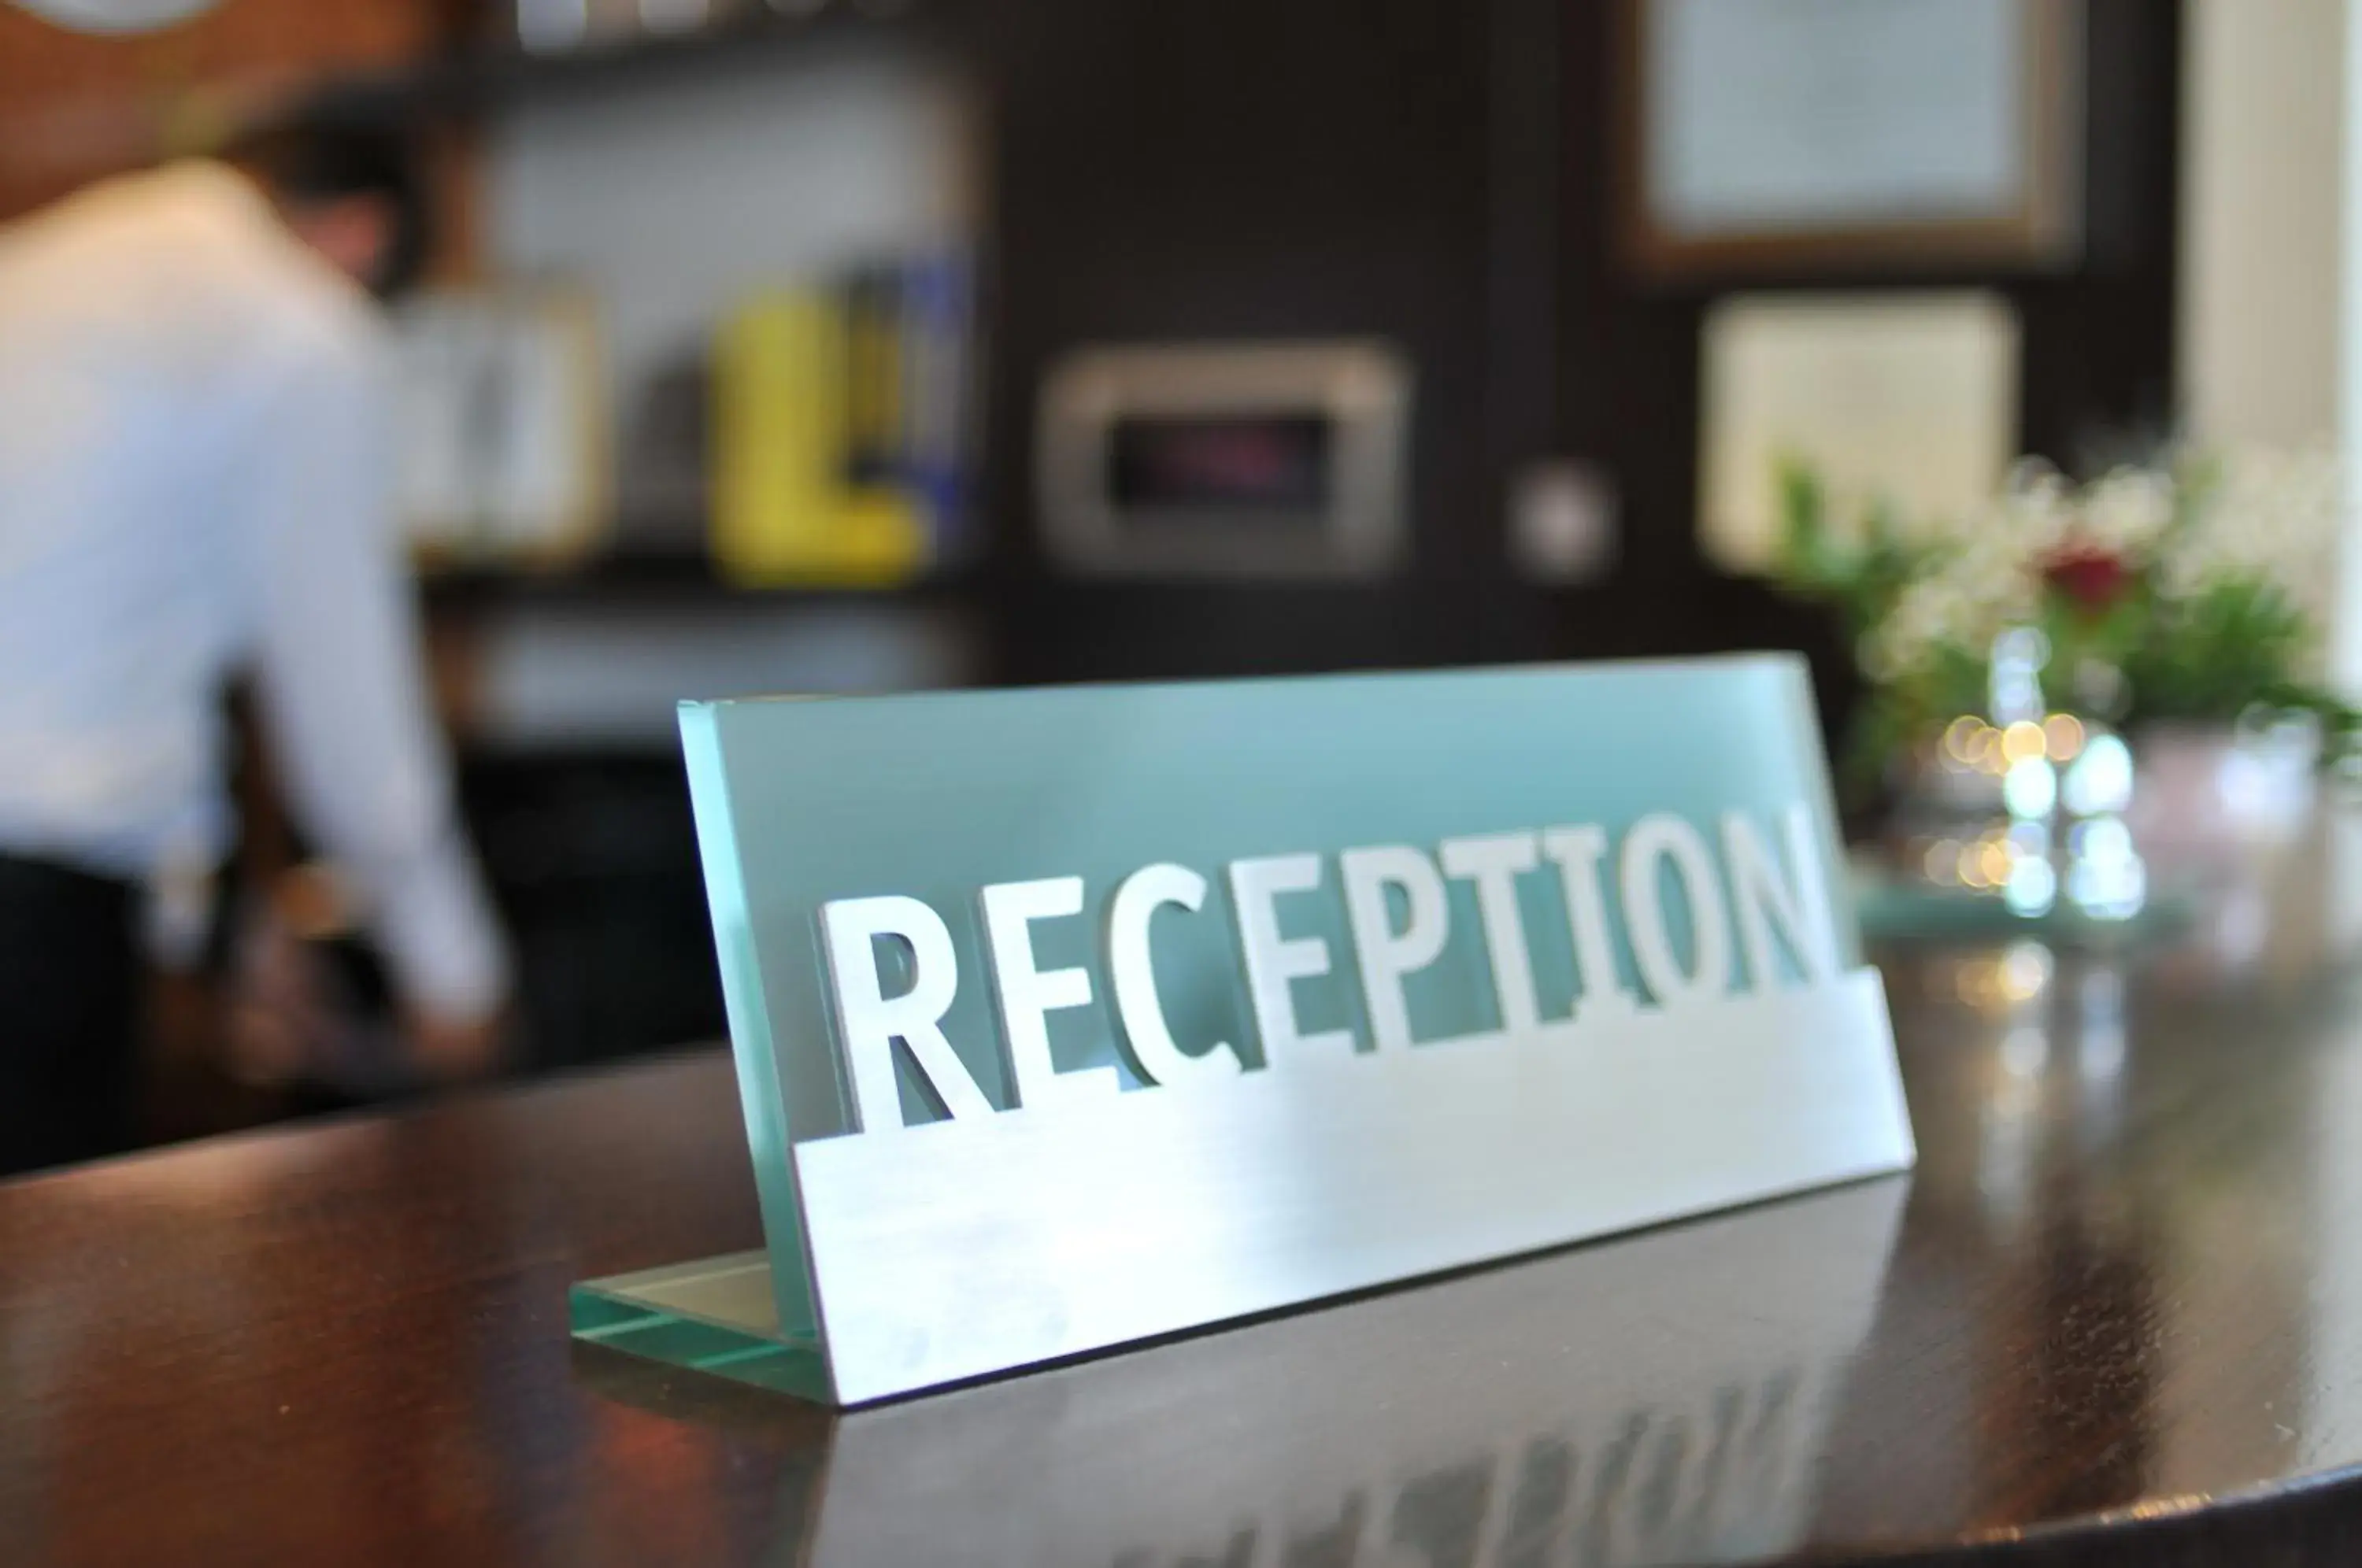 Lobby or reception in MonarC Hotel